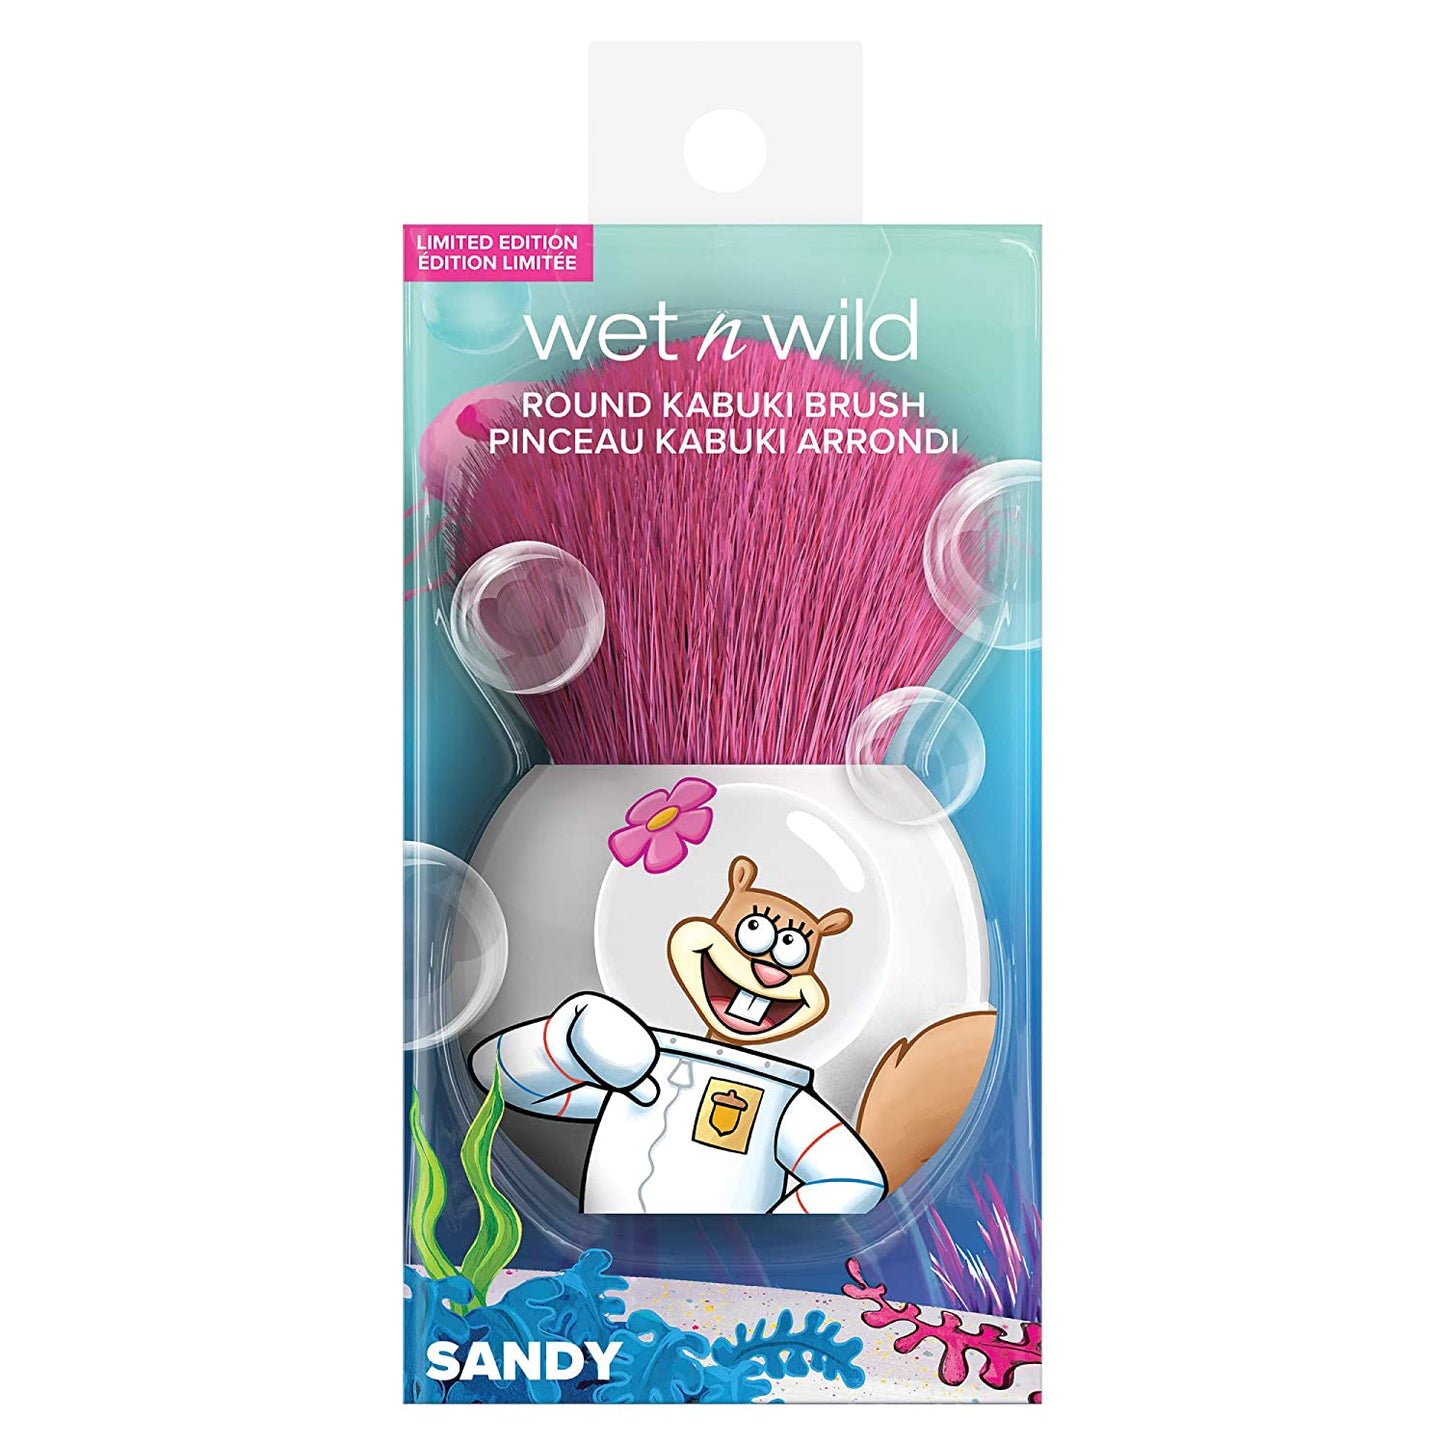 Wet N Wild 1114237, round Kabuki Brush Spongebob Squarepants Makeup Tools Cheeks round Foundation Brush, Sandy